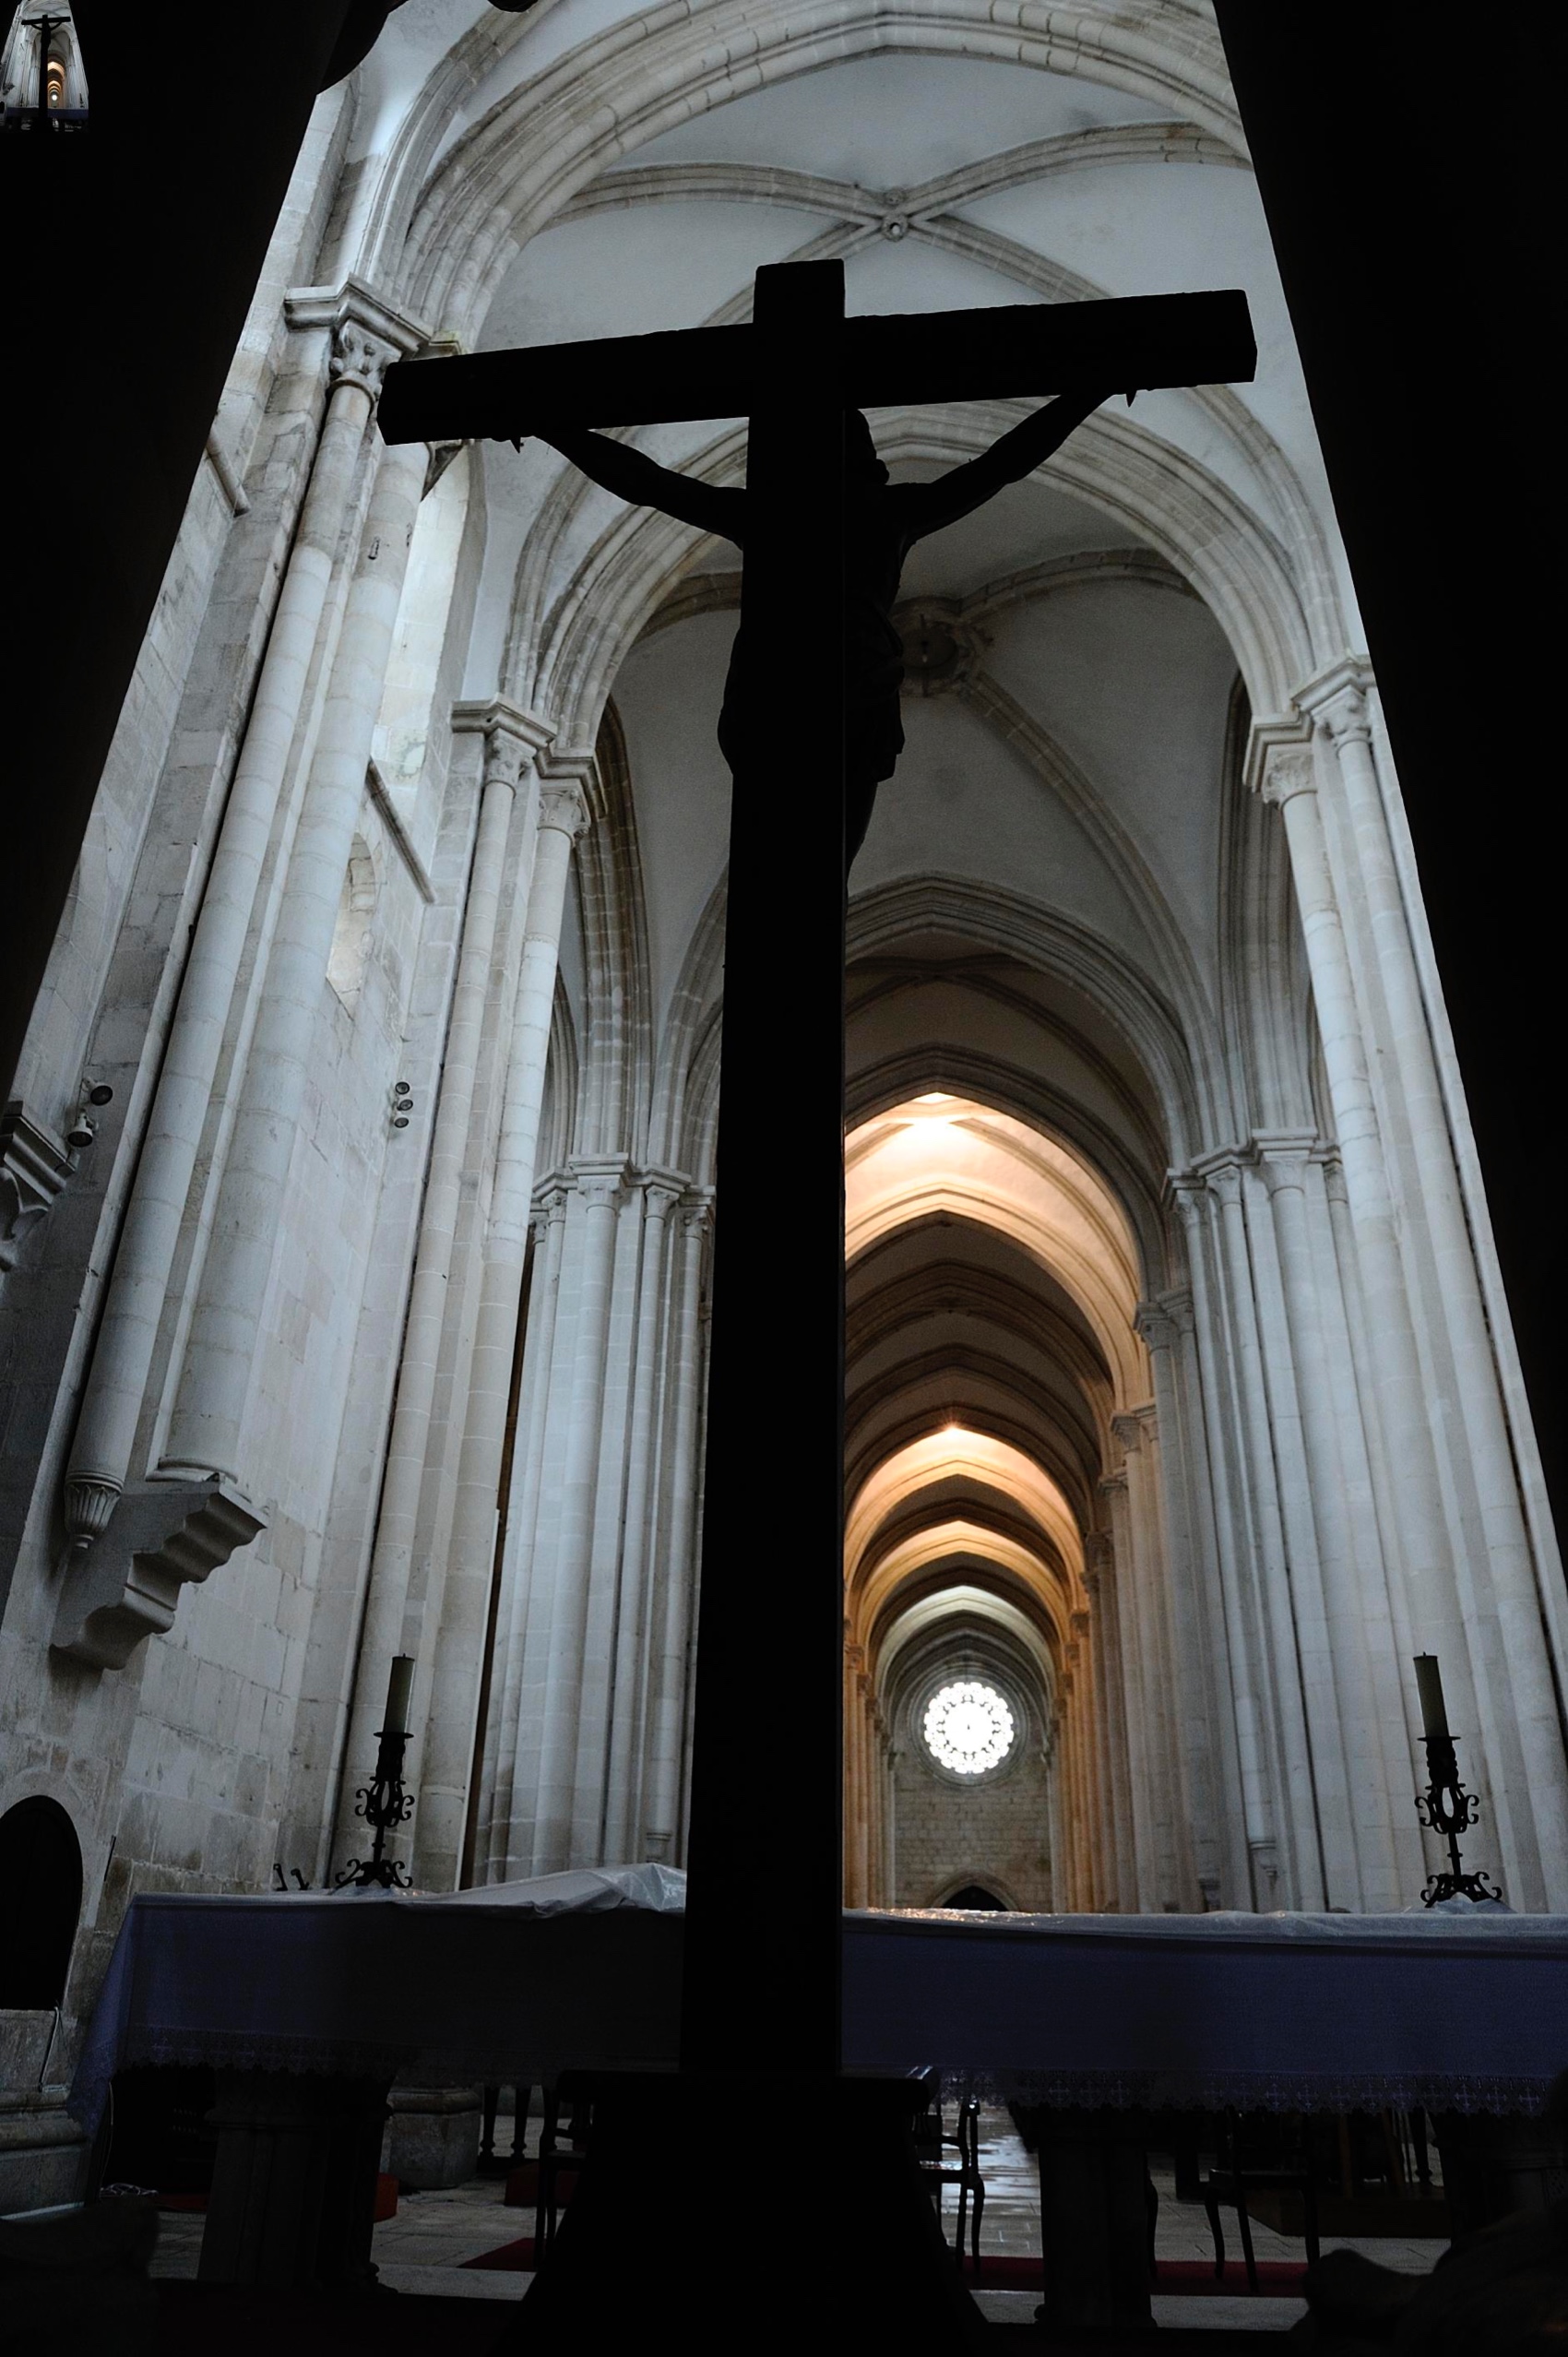 Turismo Centro de Portugal - Alcobaca Batalha Monasteries with Obidos inside